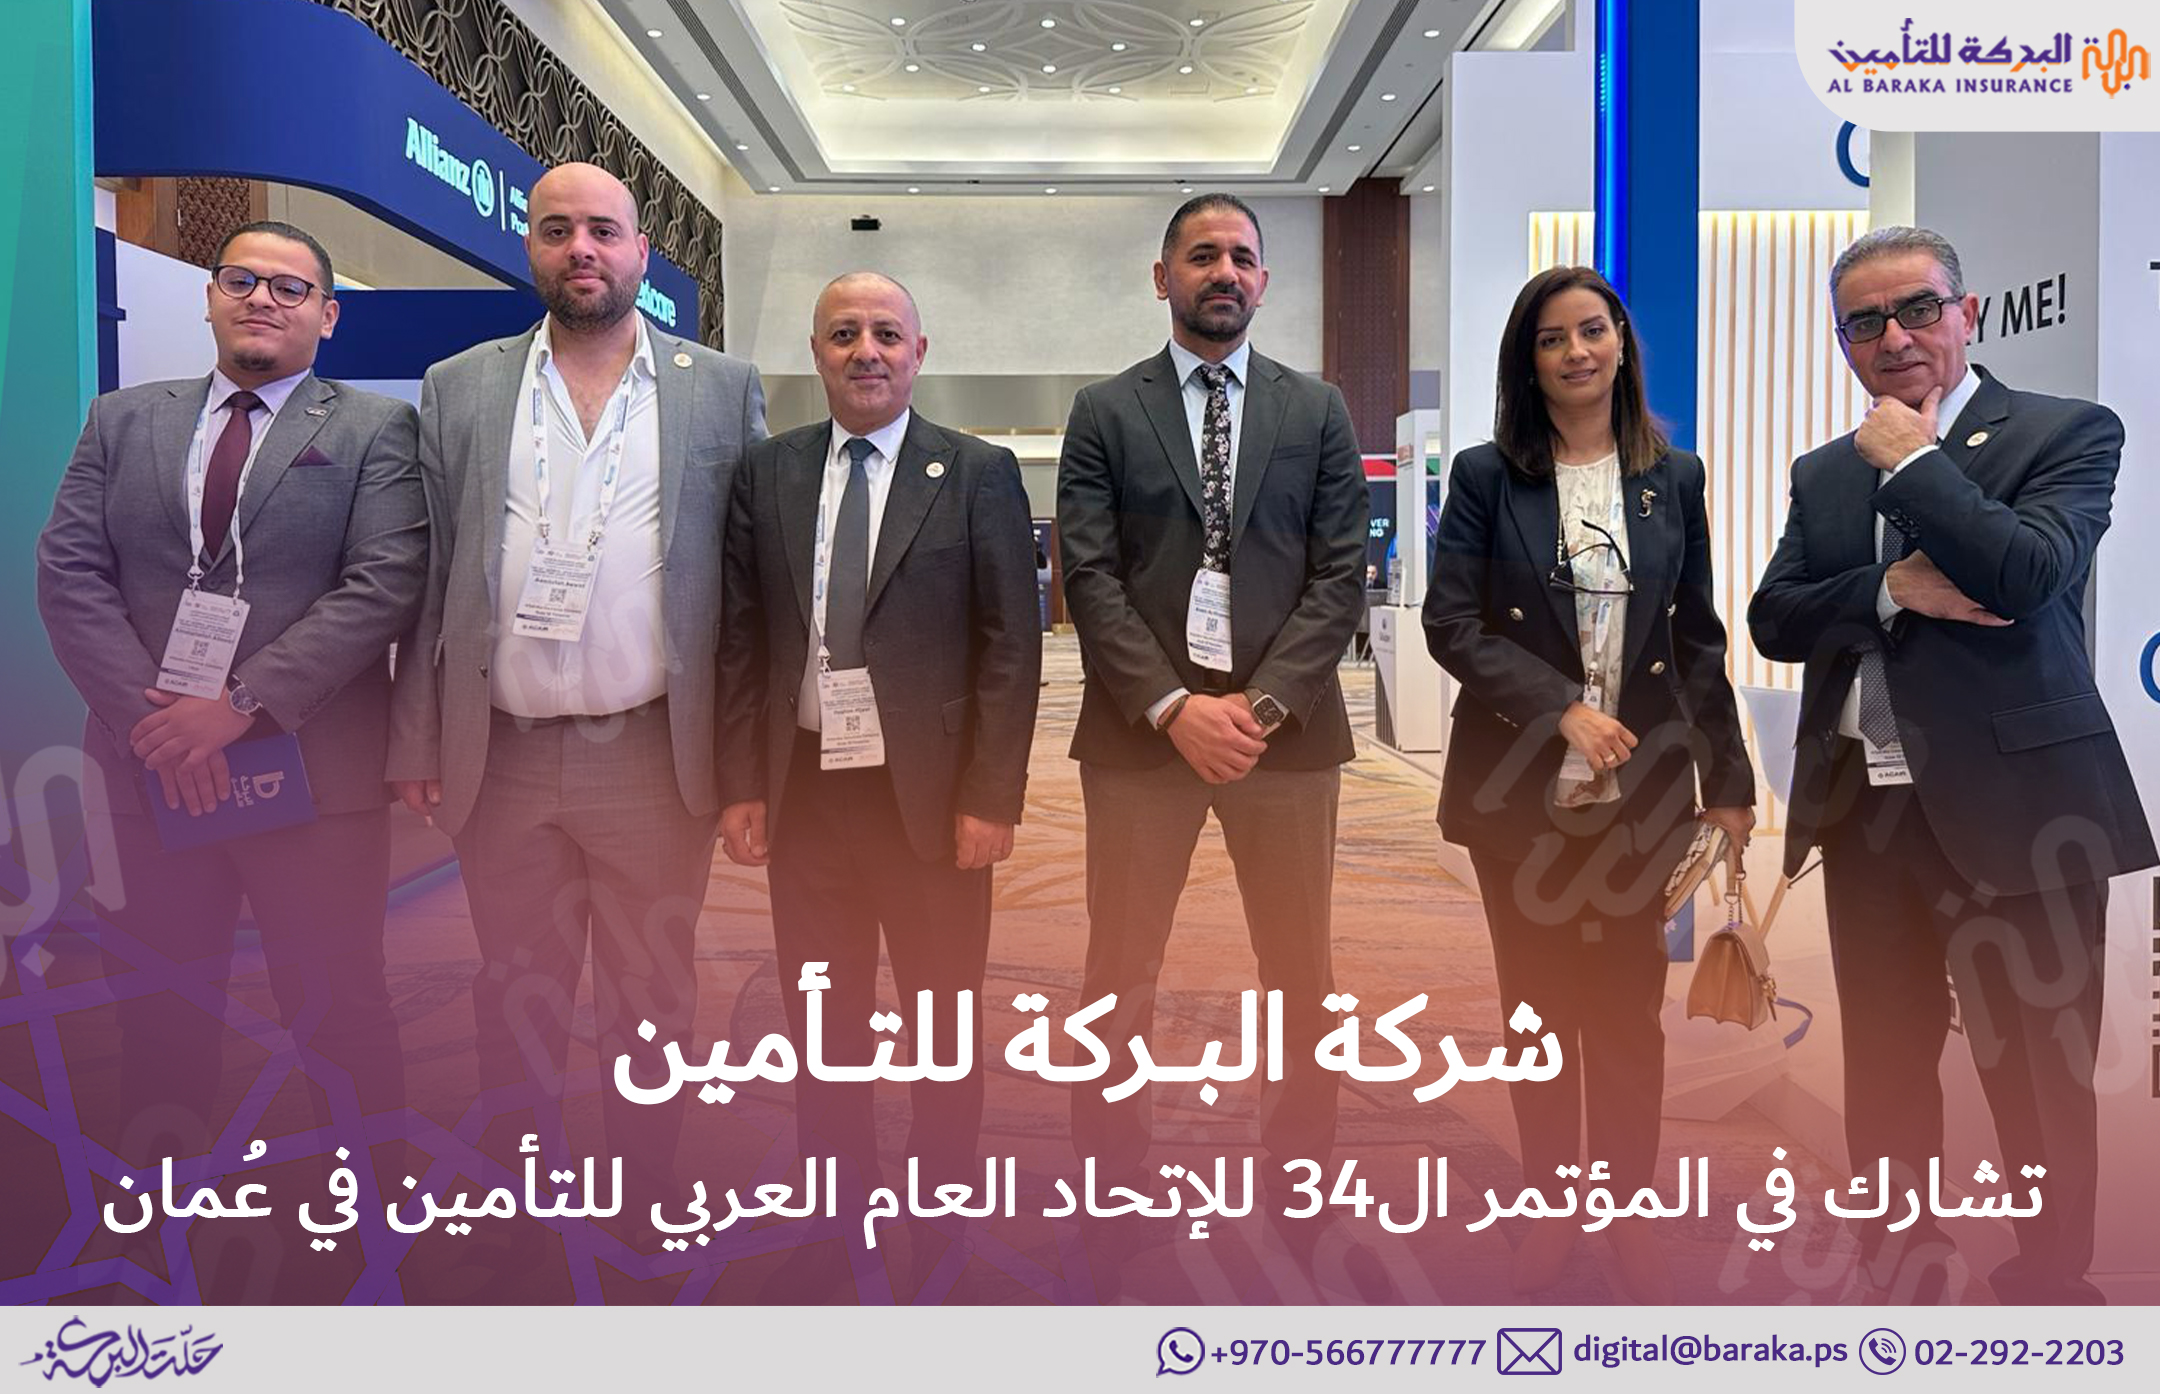 شركة البركة للتأمين تشارك في المؤتمر الرابع و الثلاثون للإتحاد العام العربي للتأمين في عُمان